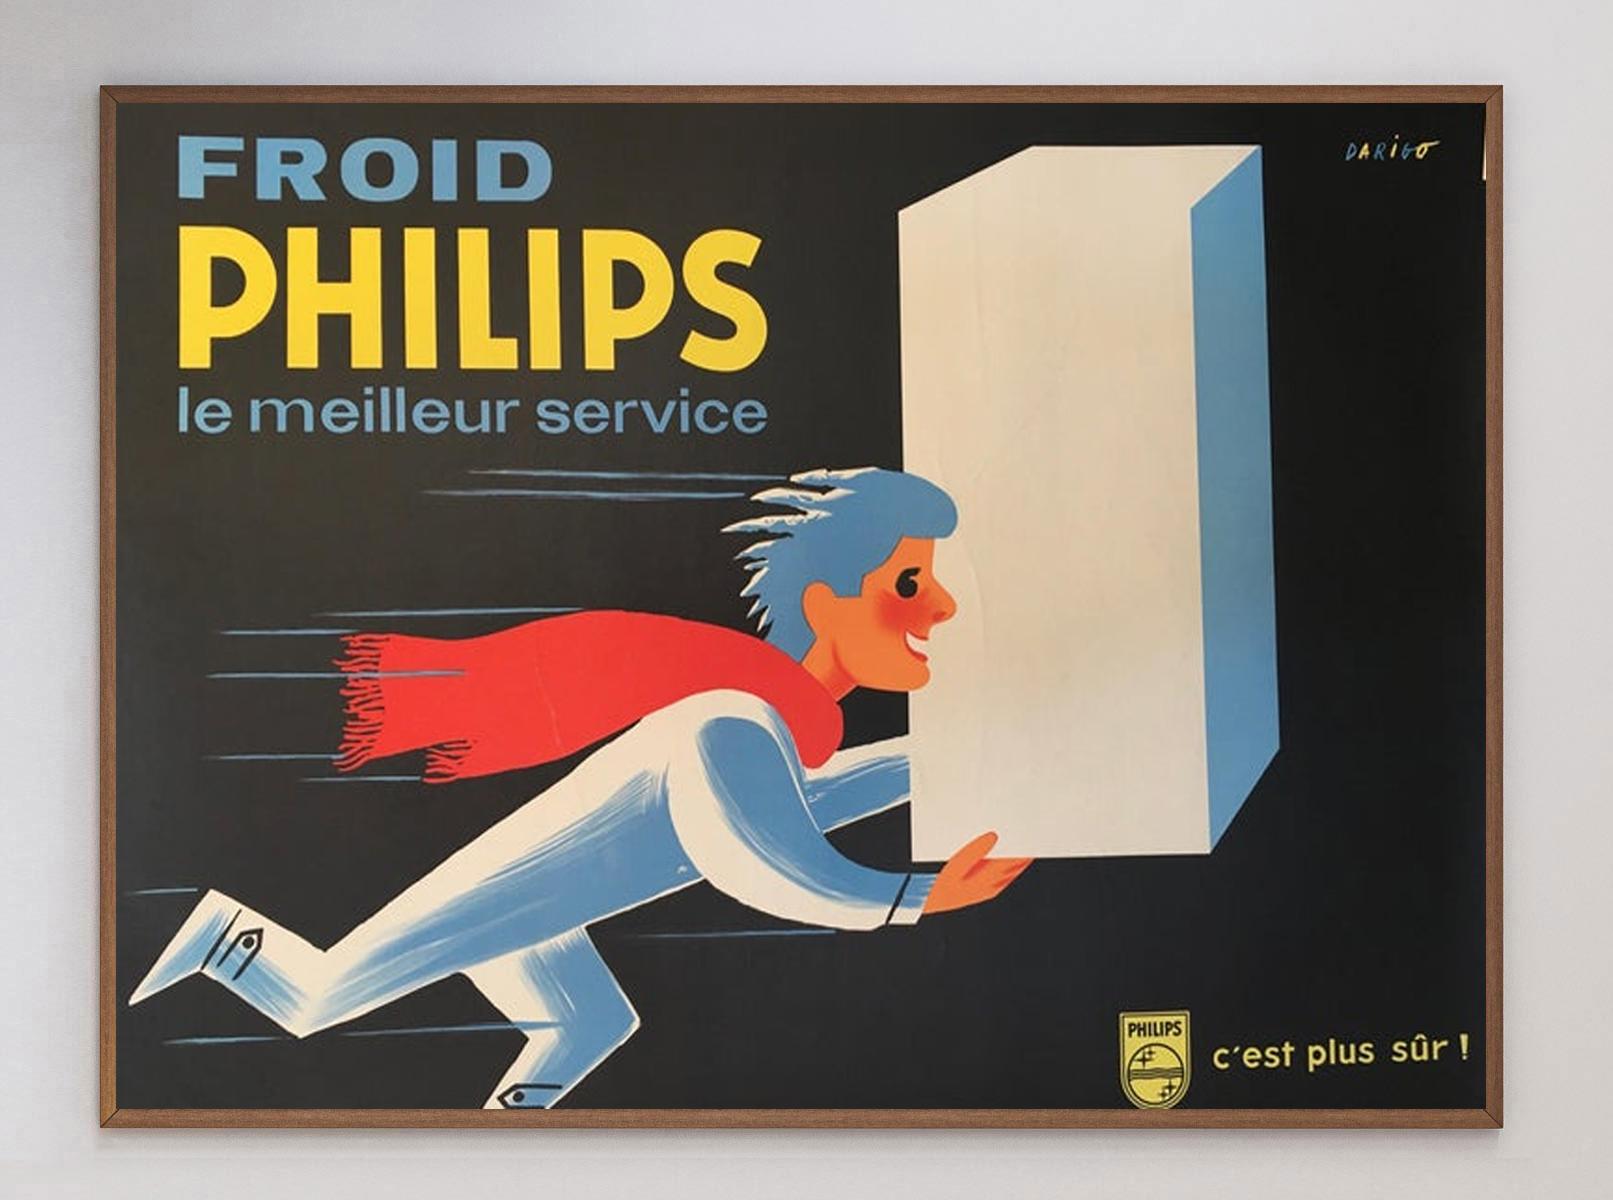 Merveilleuse et charmante affiche pour la marque d'électronique néerlandaise Philips. Fondée en 1891, Philips a été l'une des plus grandes marques d'électronique au Royaume-Uni et poursuit ses activités aujourd'hui, en se concentrant sur les